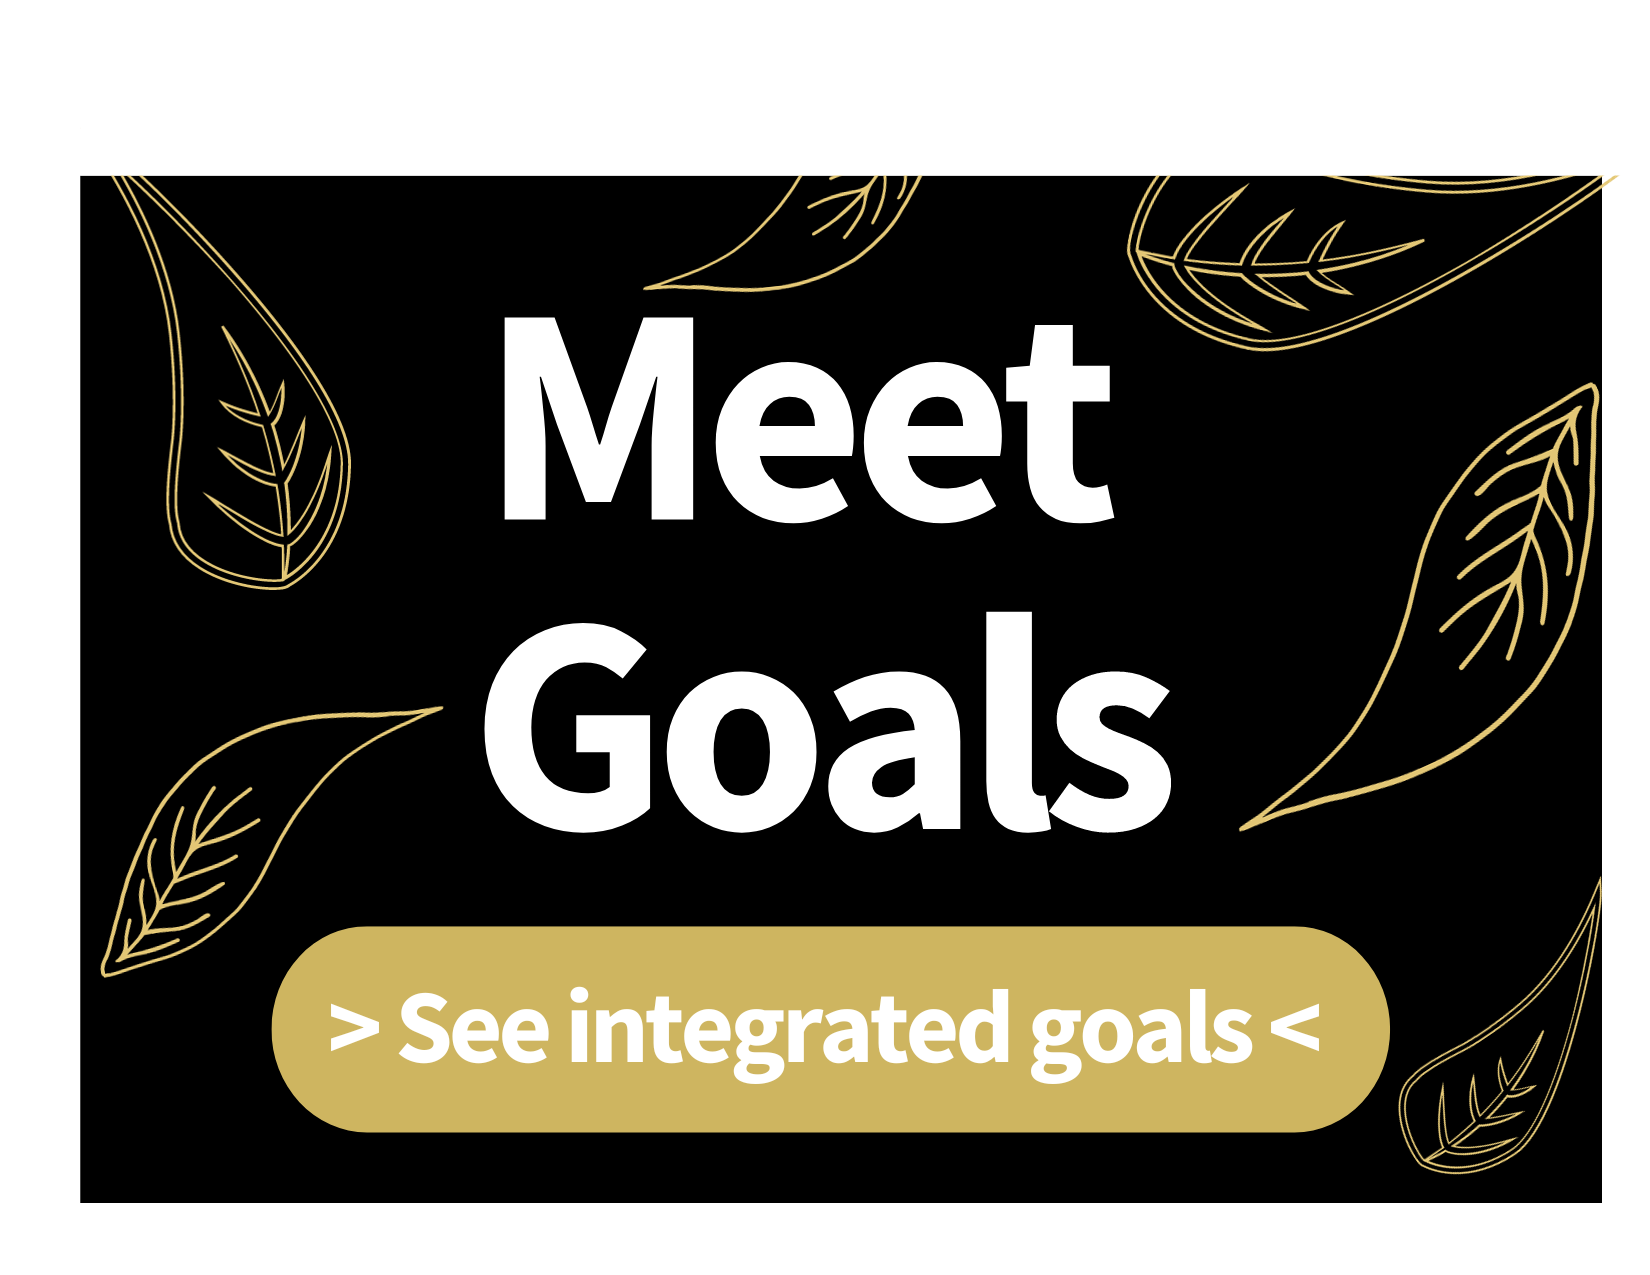 Meet Goals: see integrated goals